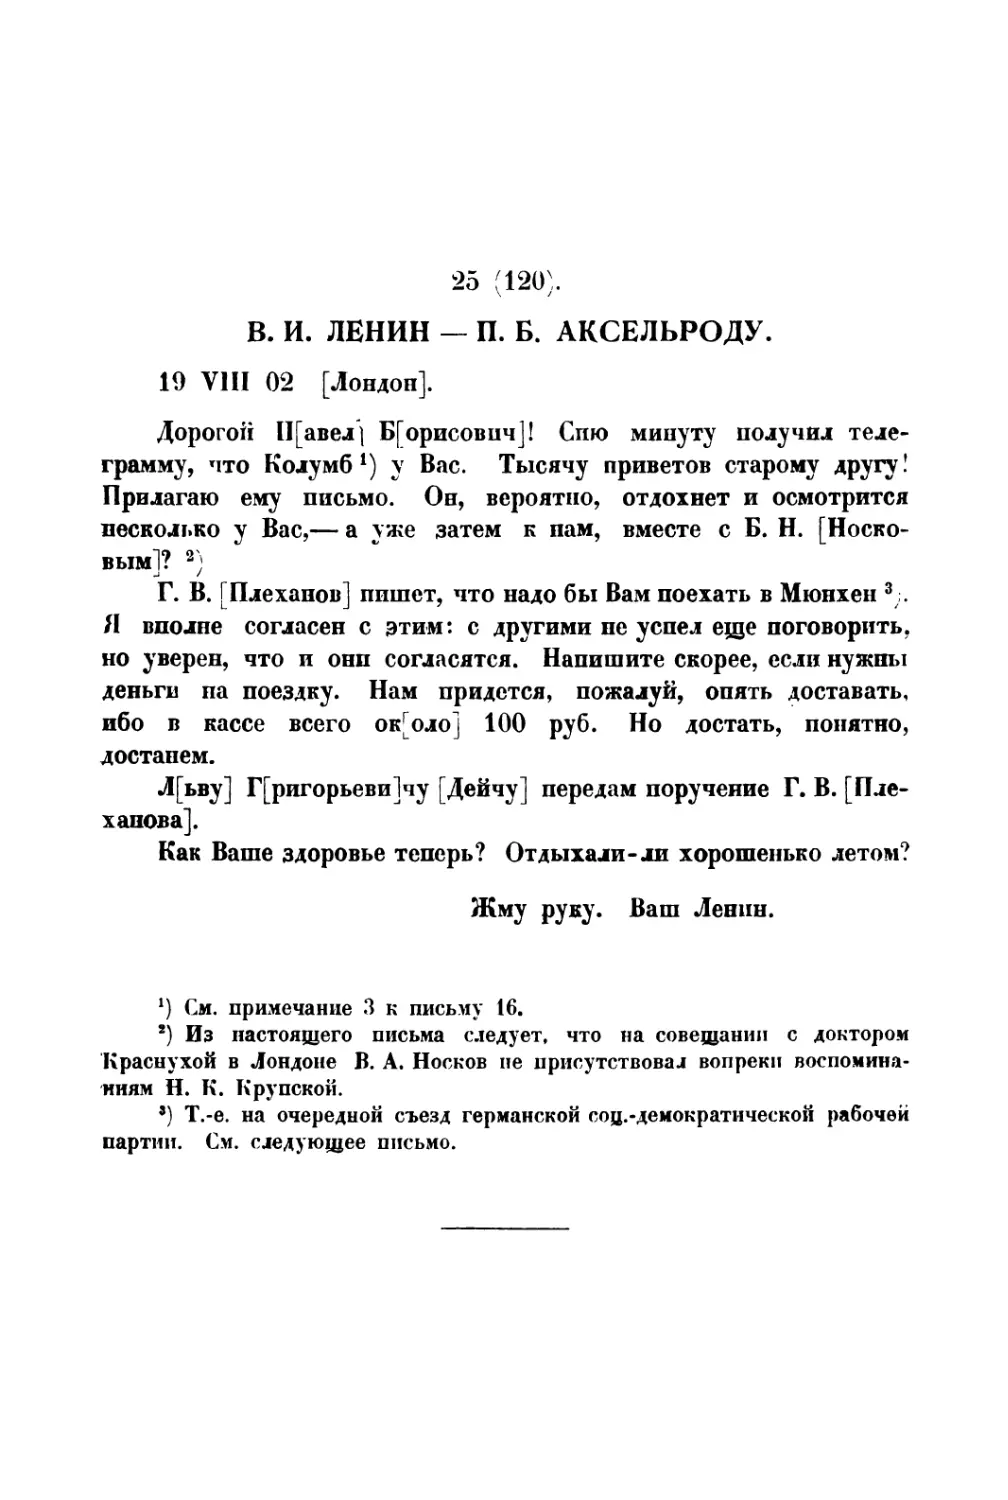 25. » П. Б. Аксельроду от 19 VIII 1902 г